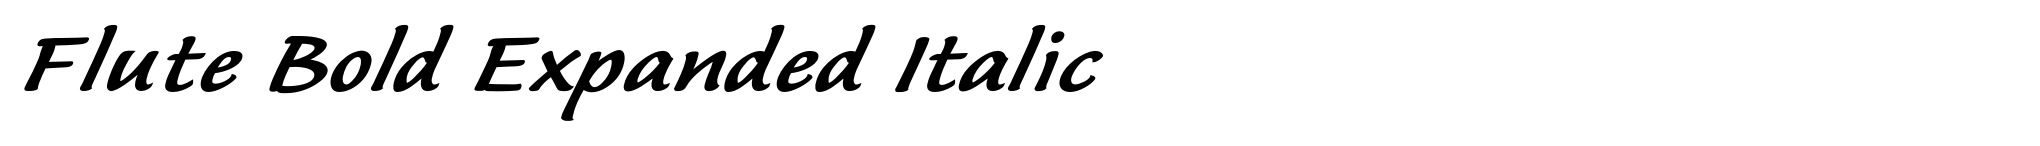 Flute Bold Expanded Italic image